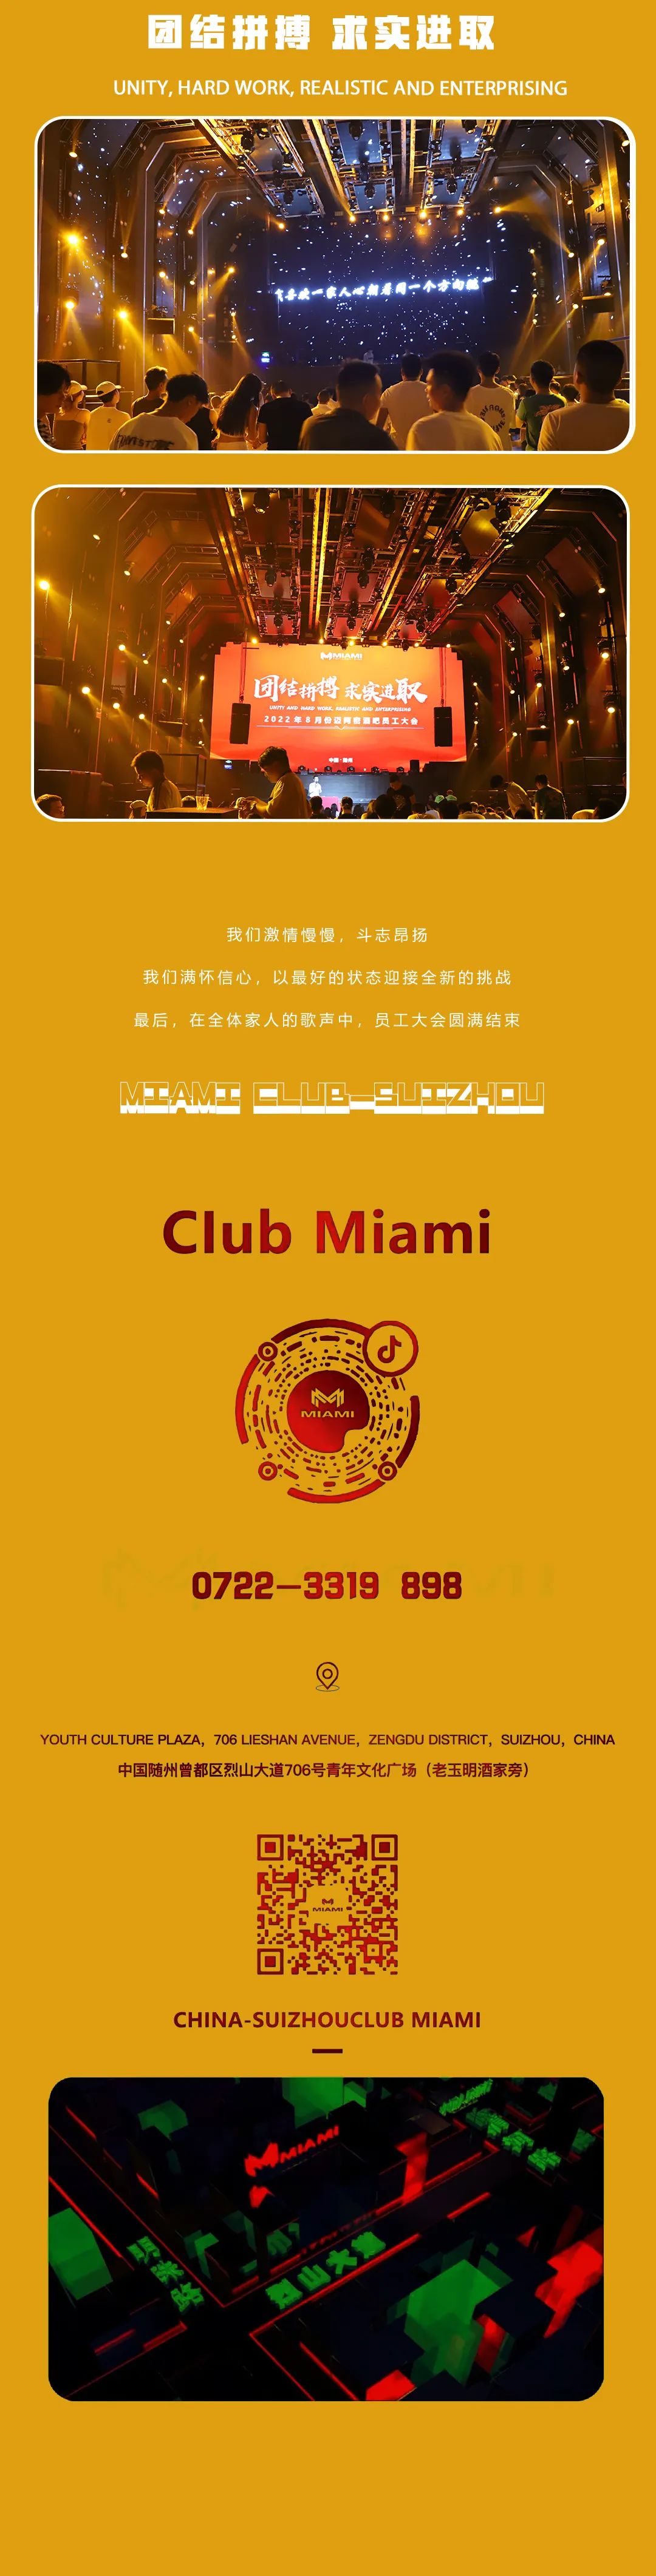 CLUB MIAMI | 团结拼搏 求实进取 | 八月份员工大会-随州迈阿密酒吧/MIAMI CLUB